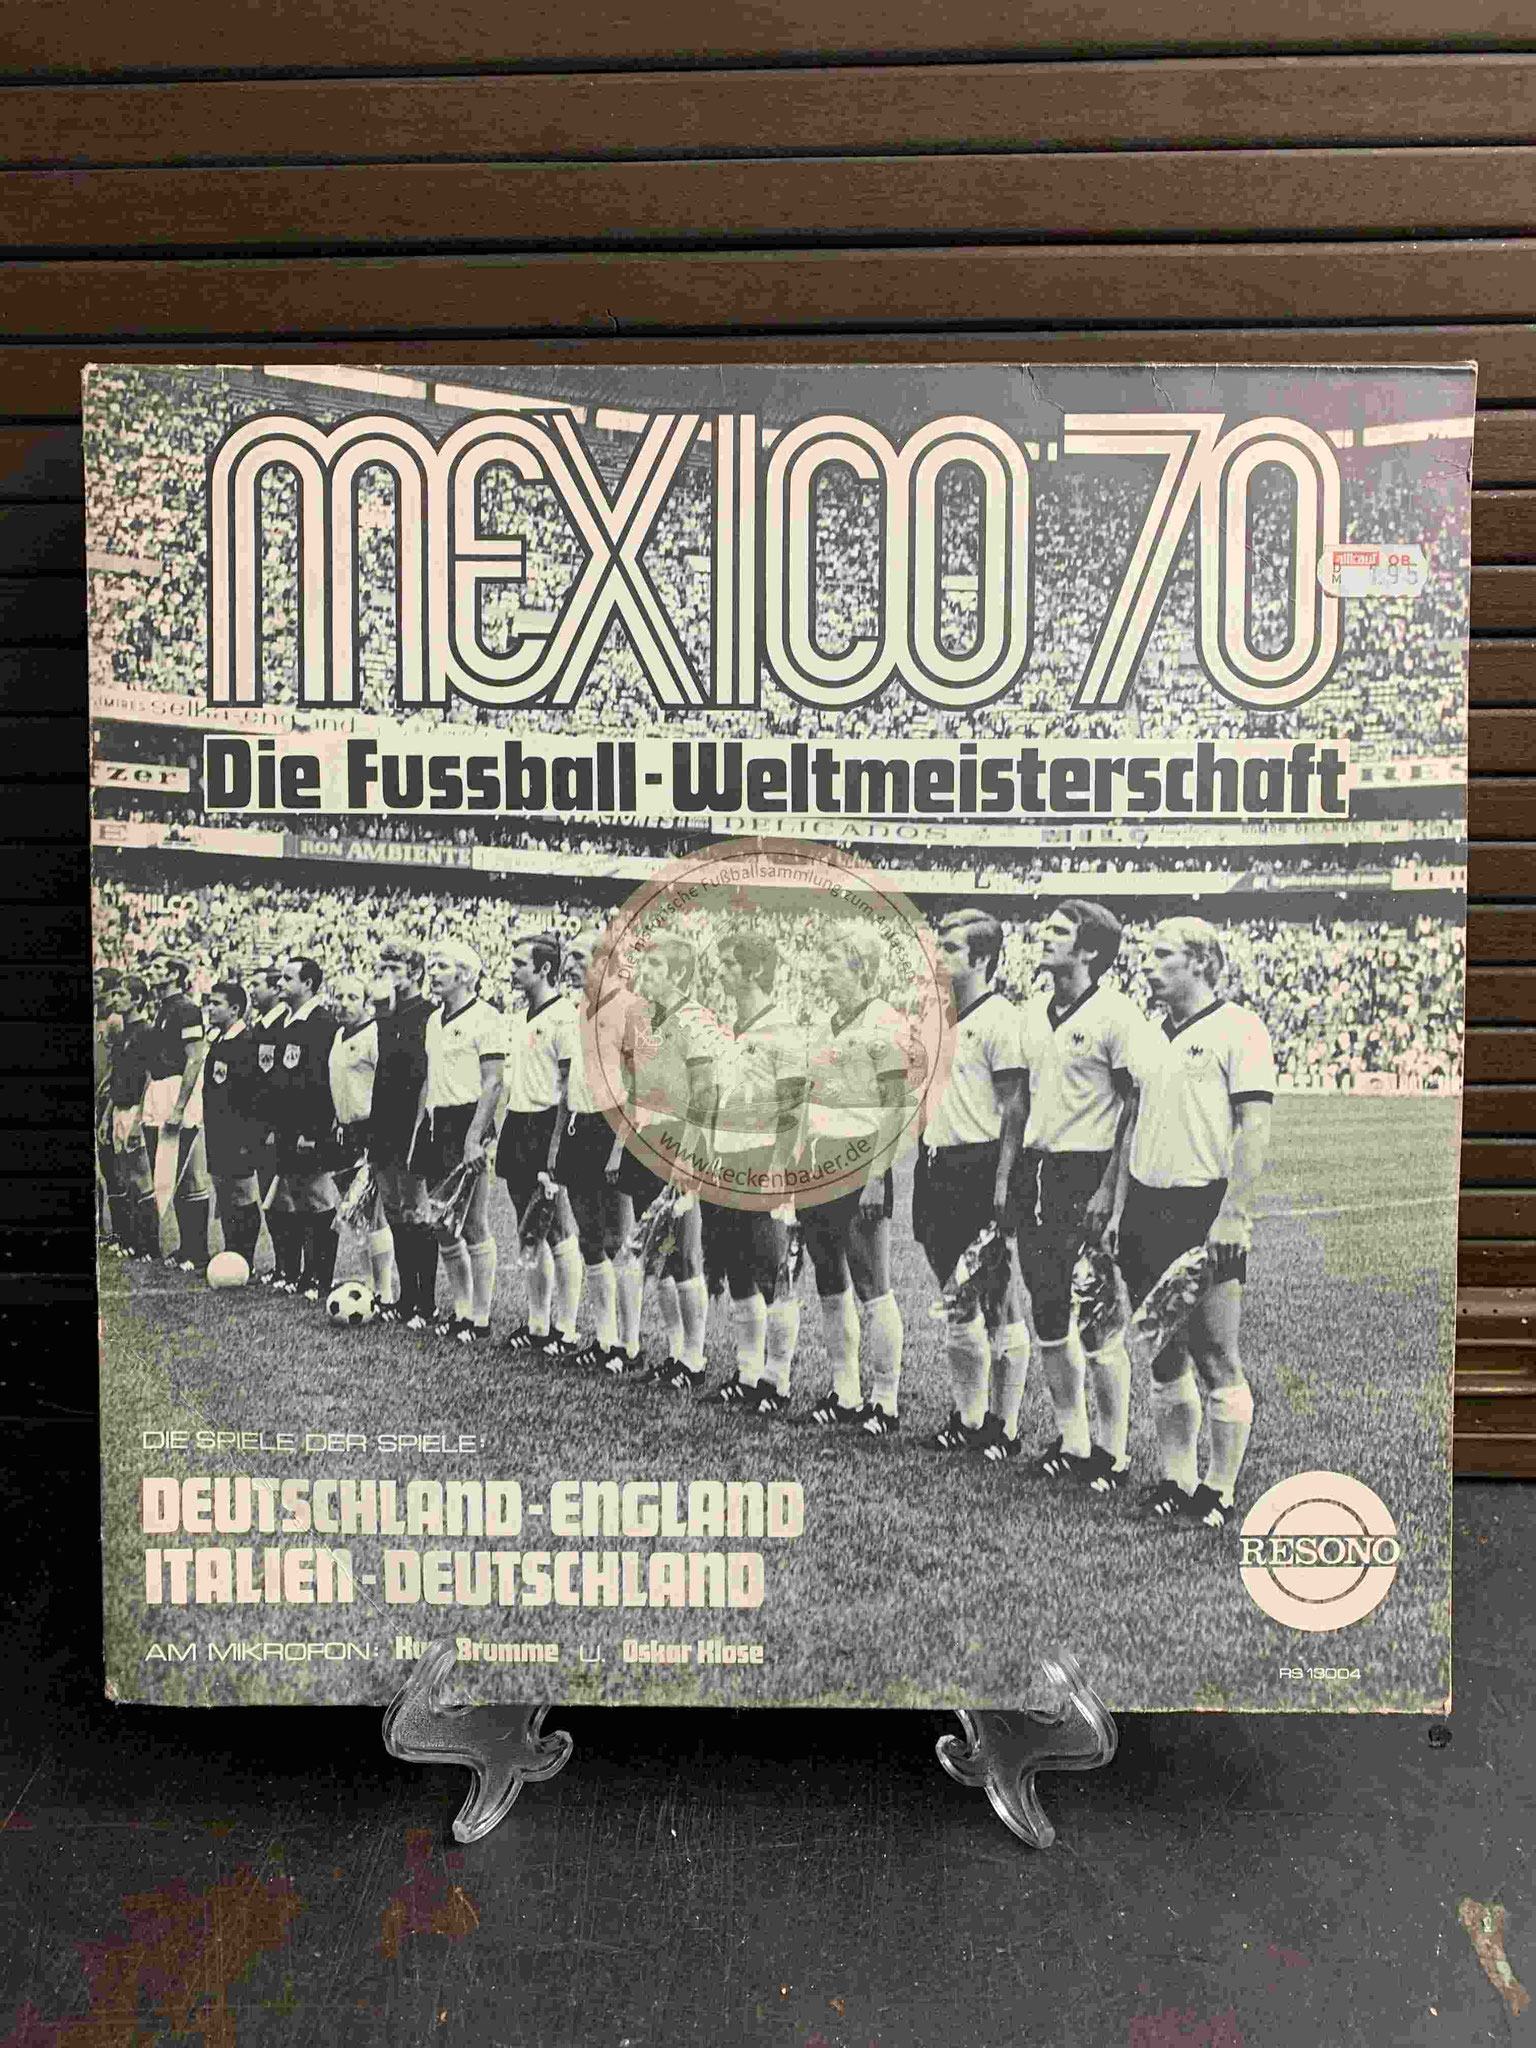 1970 Mexico 70 Die Fussball-Weltmeisterschaft Deutschland - England und Italien - Deutschland